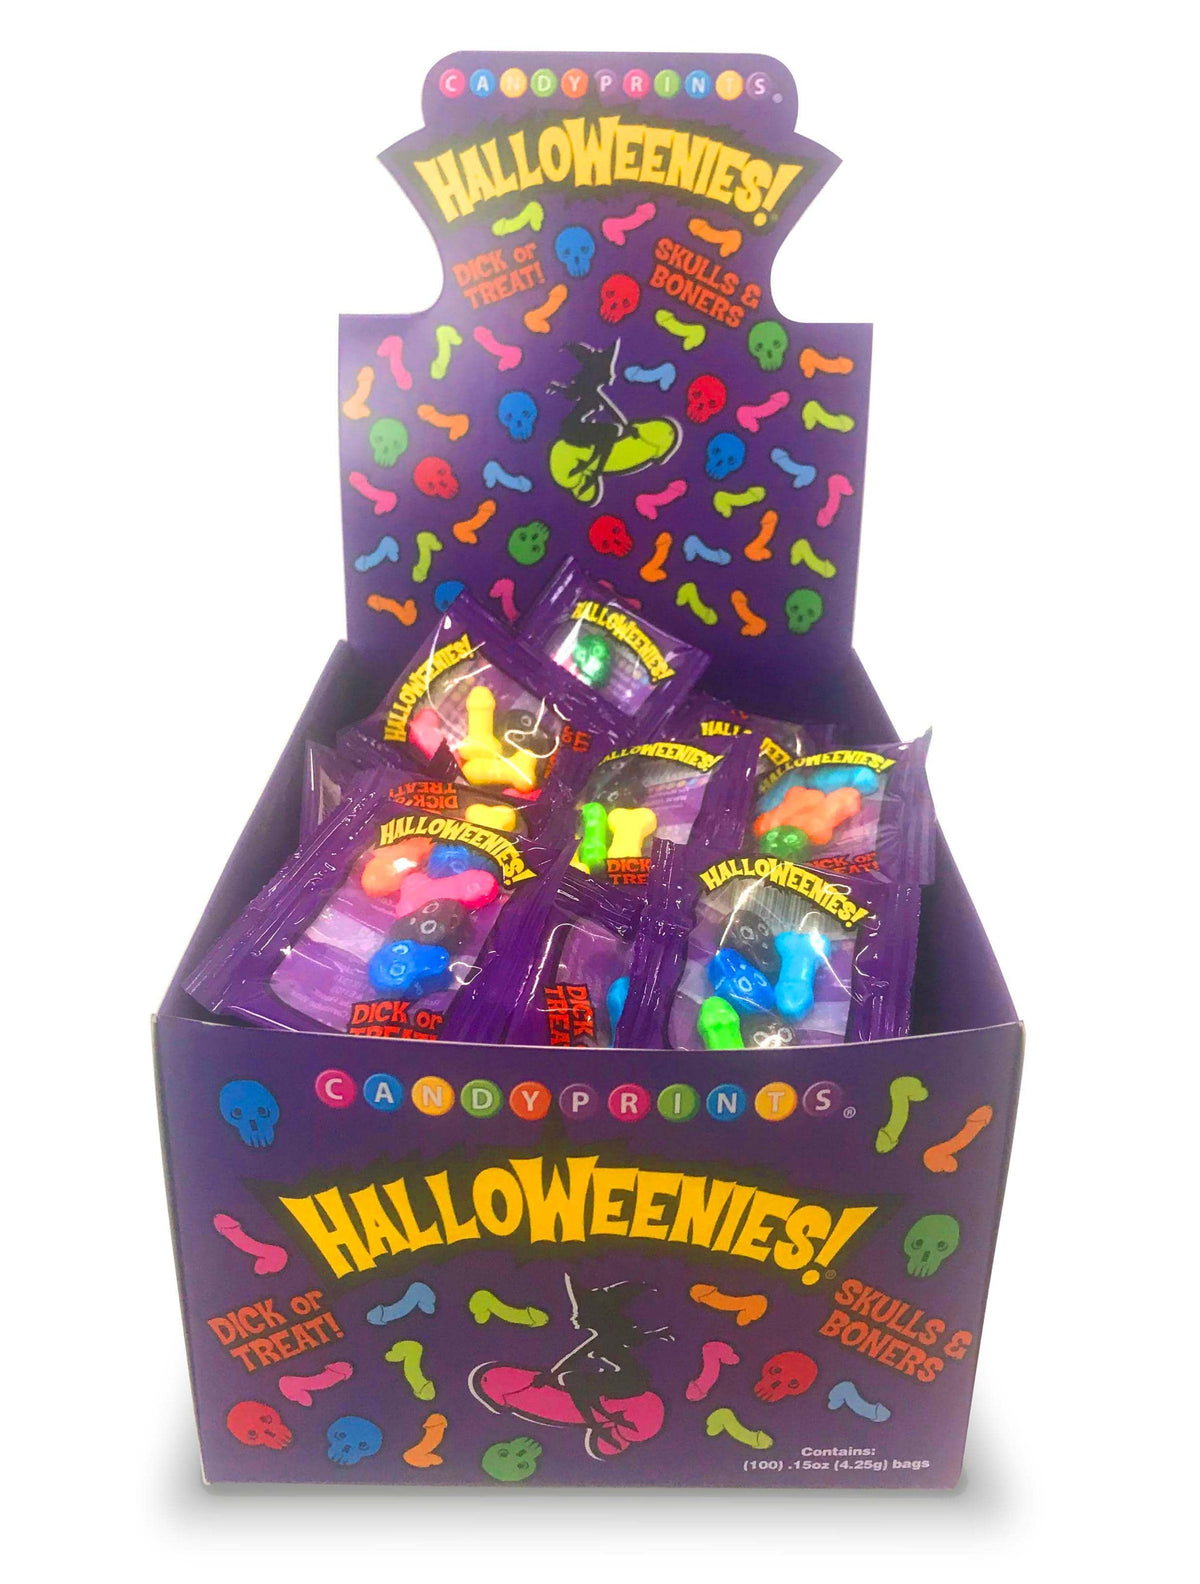 halloweenies display of 100 bags